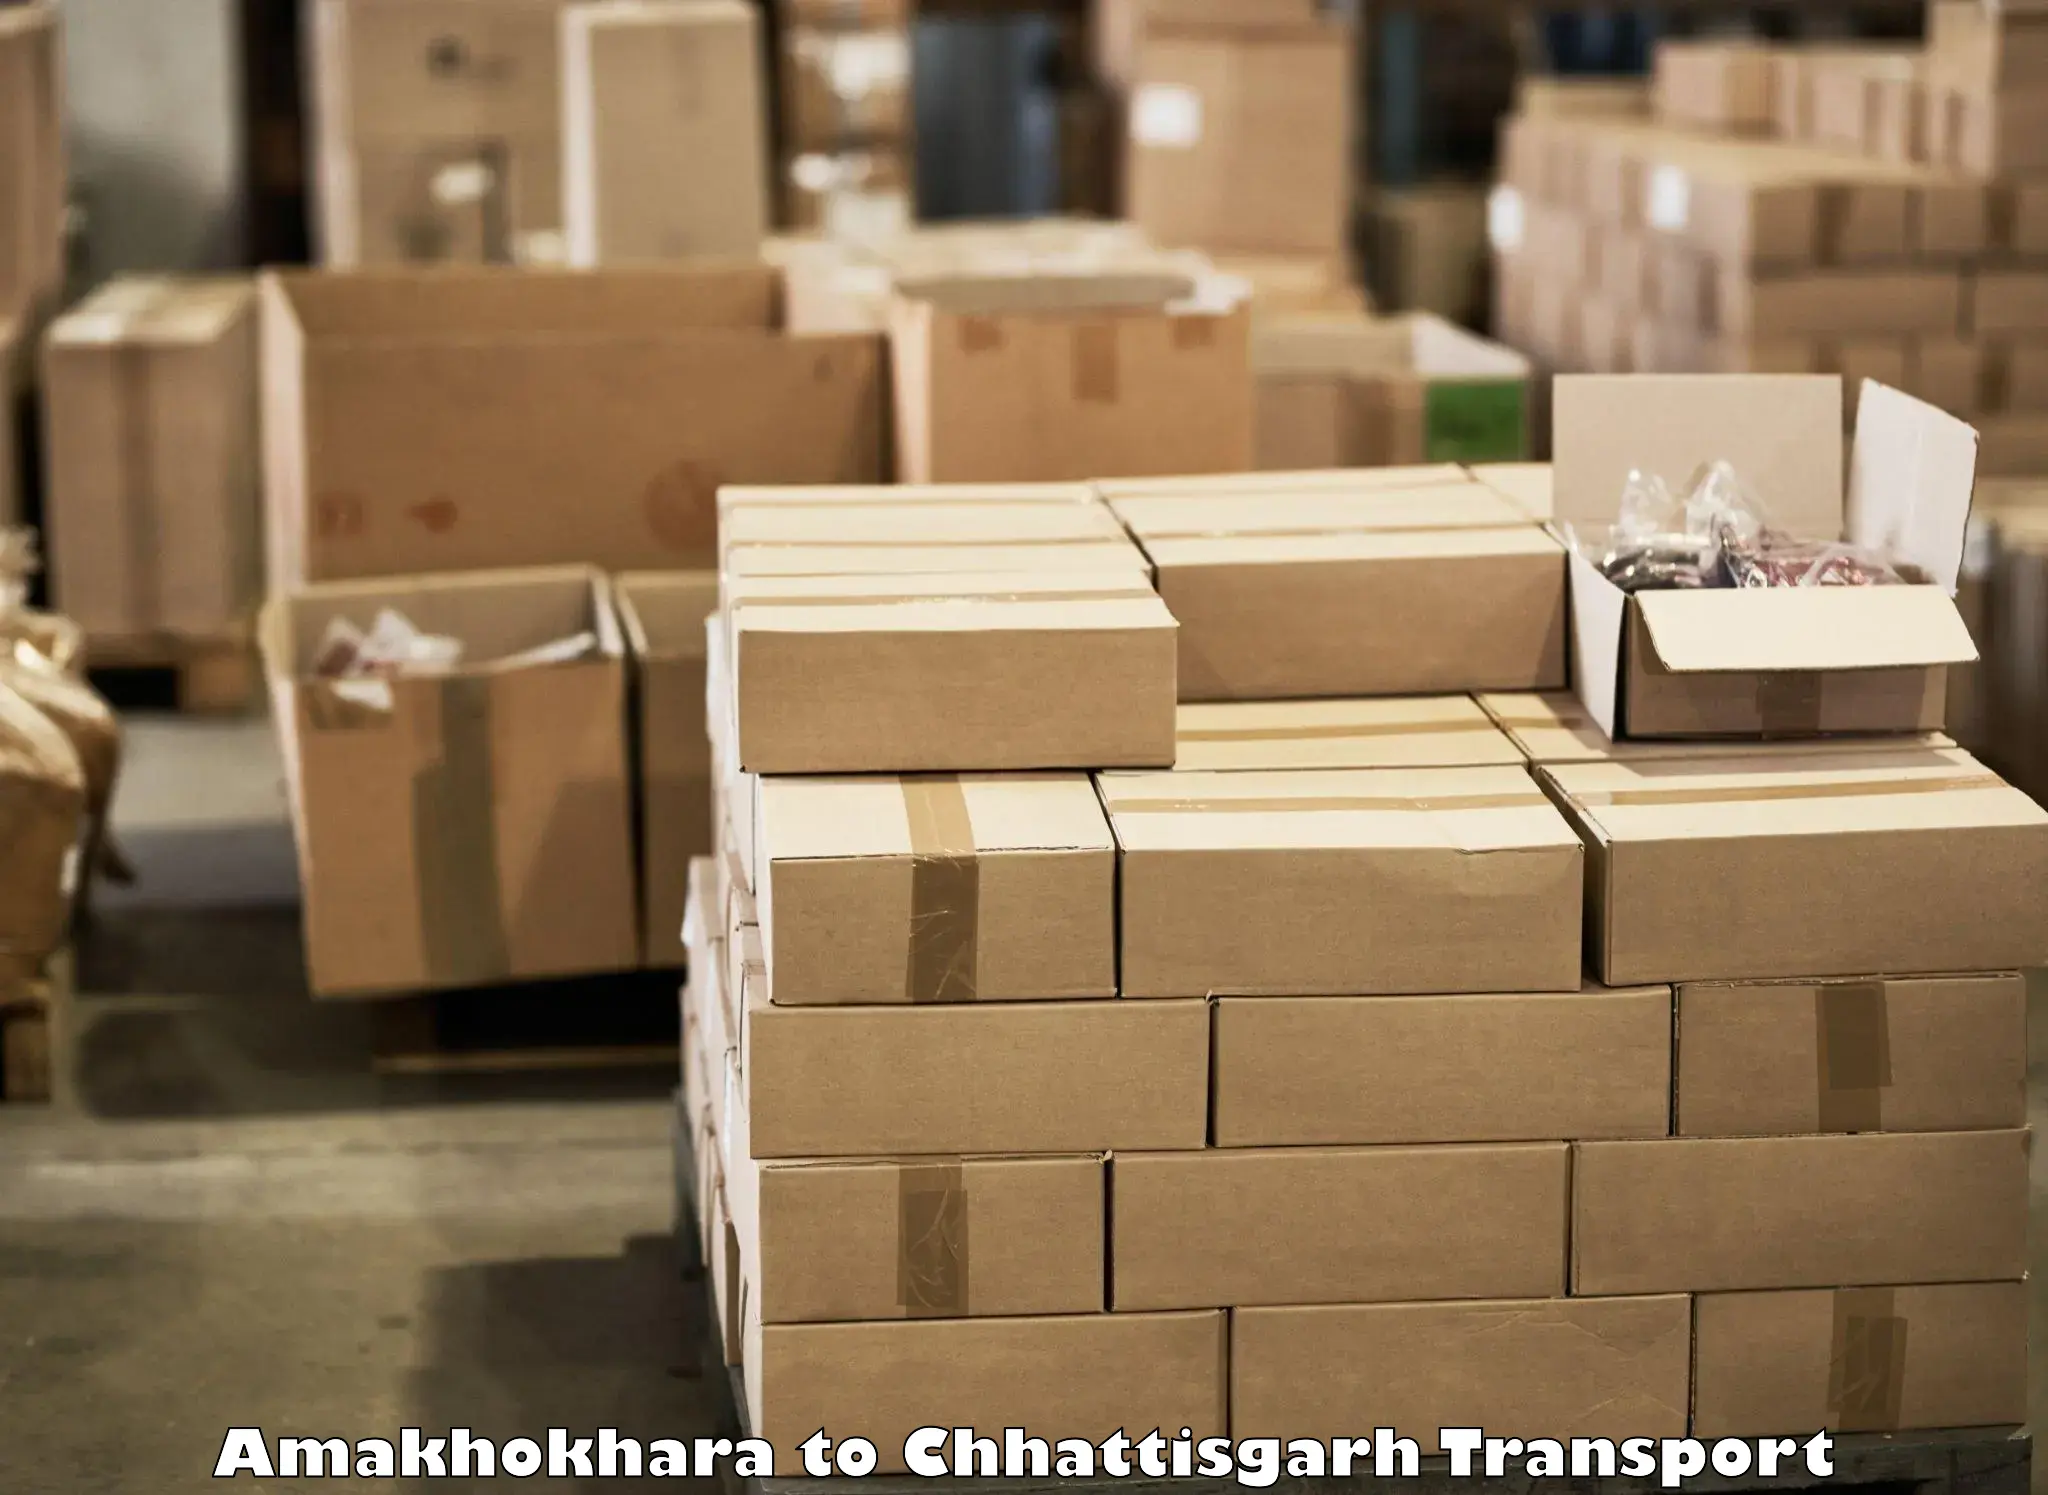 Shipping partner Amakhokhara to Chhattisgarh